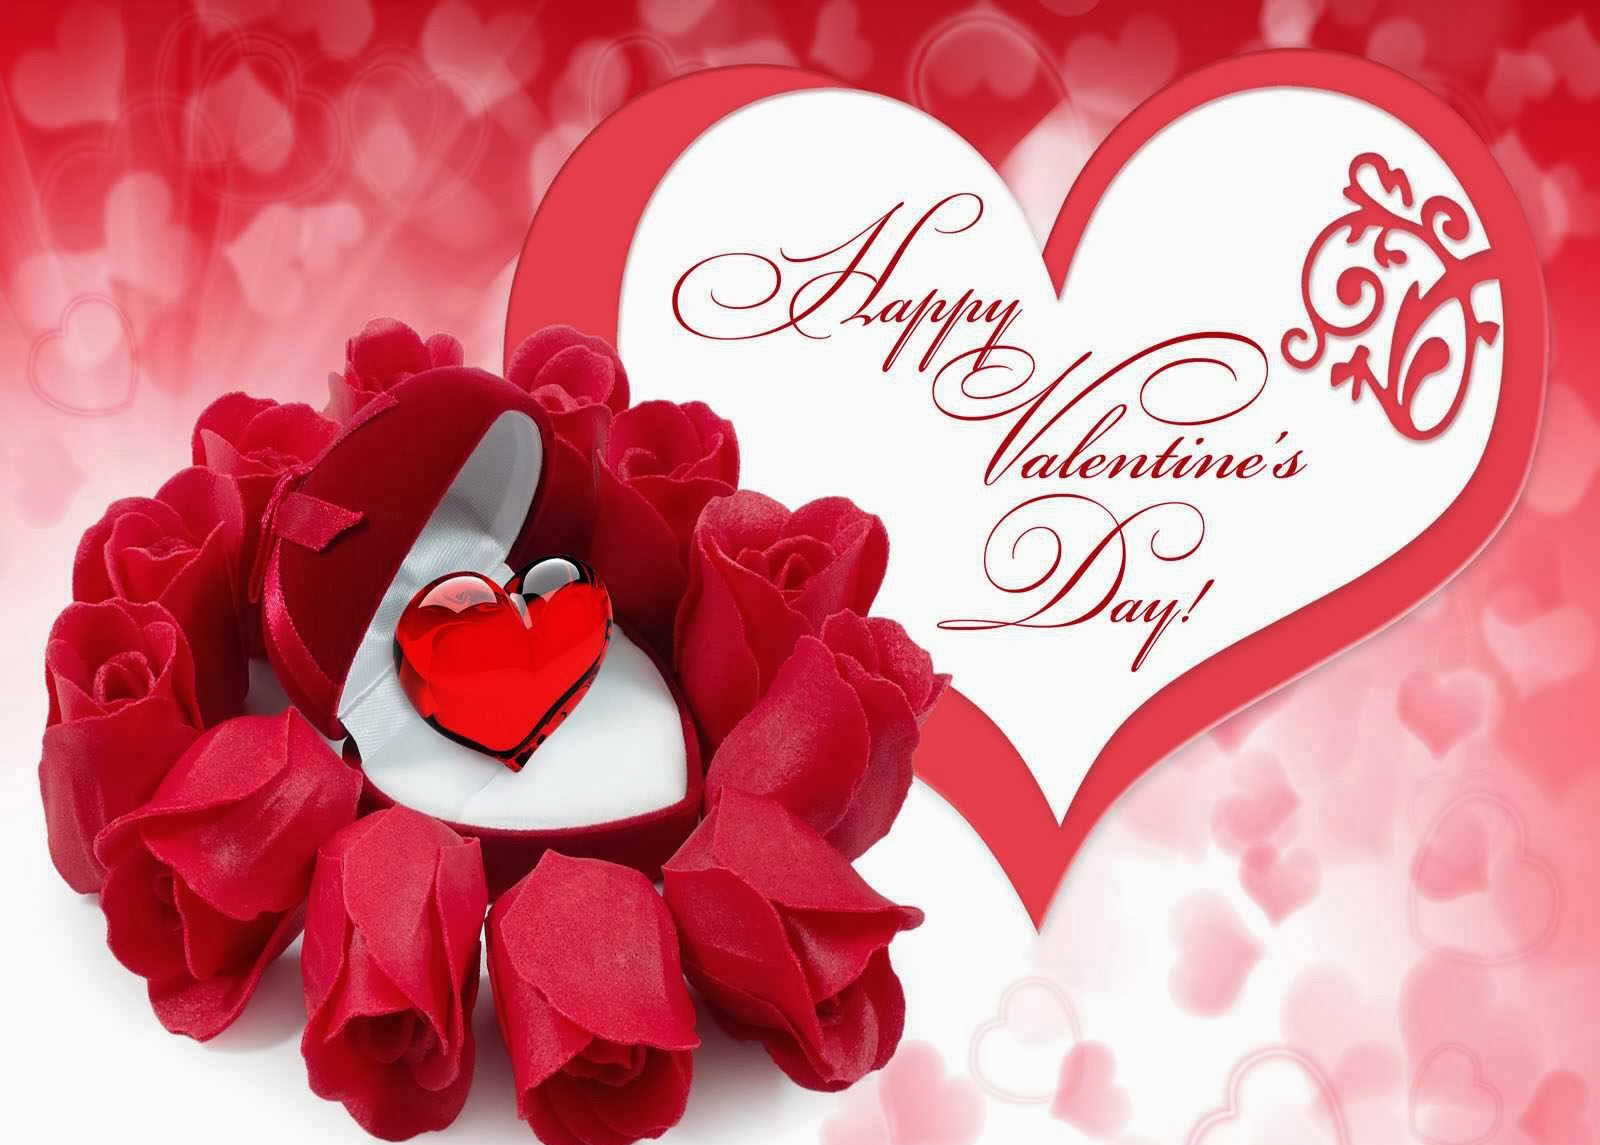 Hãy khám phá những thiệp chúc mừng Valentine đẹp nhất của năm 2024 để tặng cho người yêu của bạn. Mỗi thiệp đều được thiết kế đầy tình yêu và sự sáng tạo. Hãy để những đóa hoa hồng, nụ hôn, và lời chúc từ những thiệp này làm say đắm trái tim của bạn và người mình yêu trong ngày Valentine.